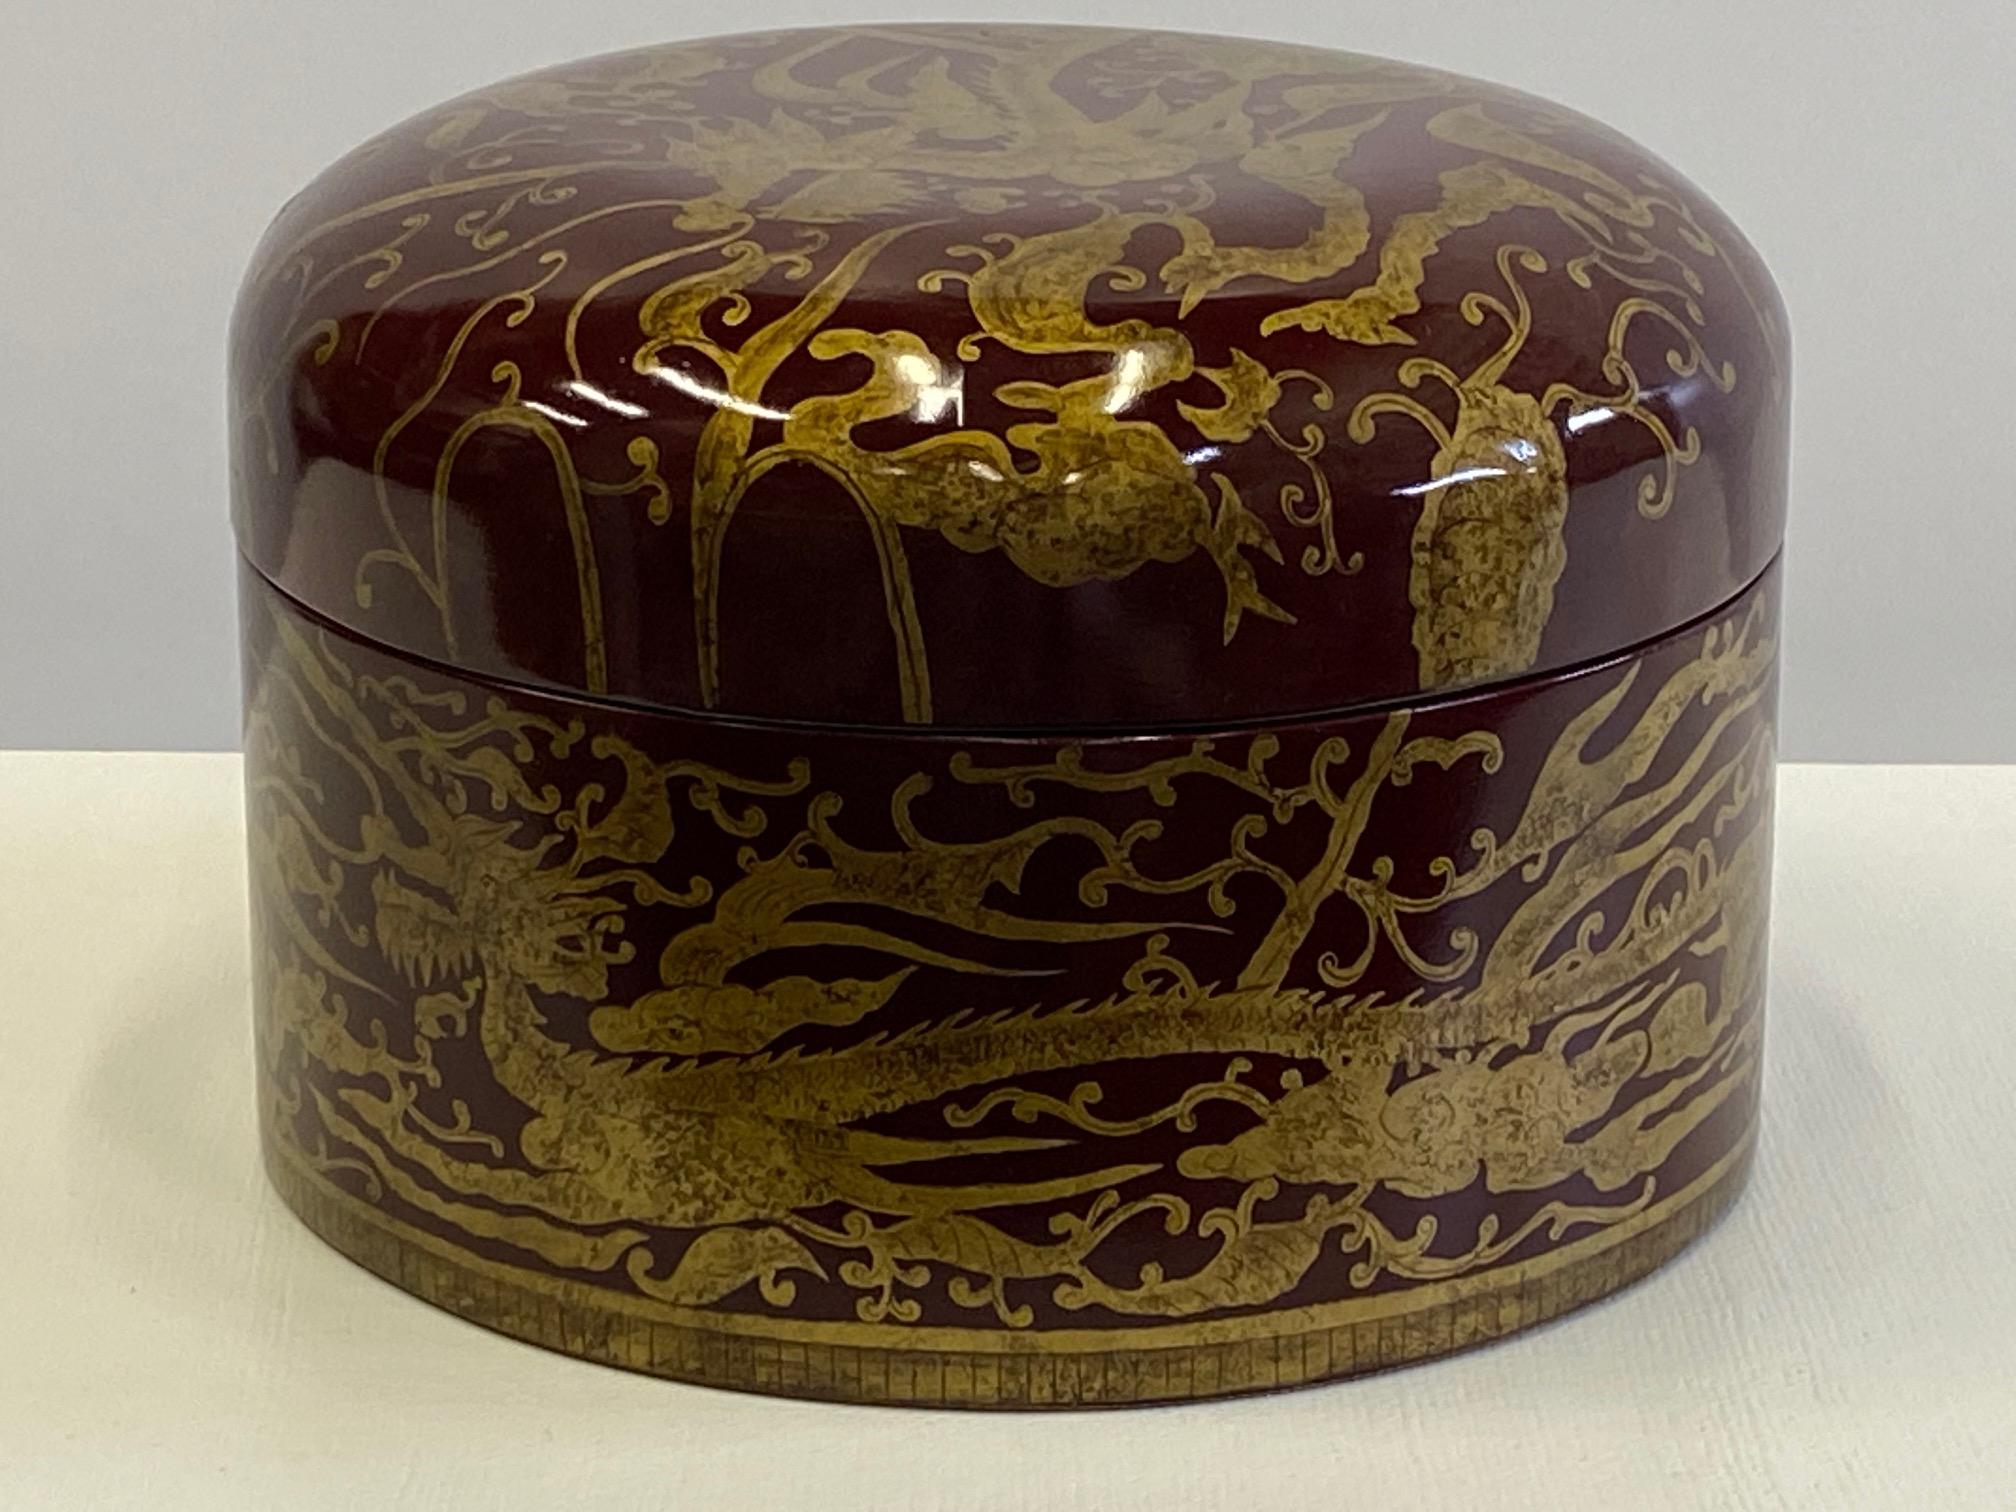 Magnifique bijou rond d'une boîte à couvercle laqué rouge avec une décoration d'inspiration asiatique en or avec des dragons et des oiseaux.